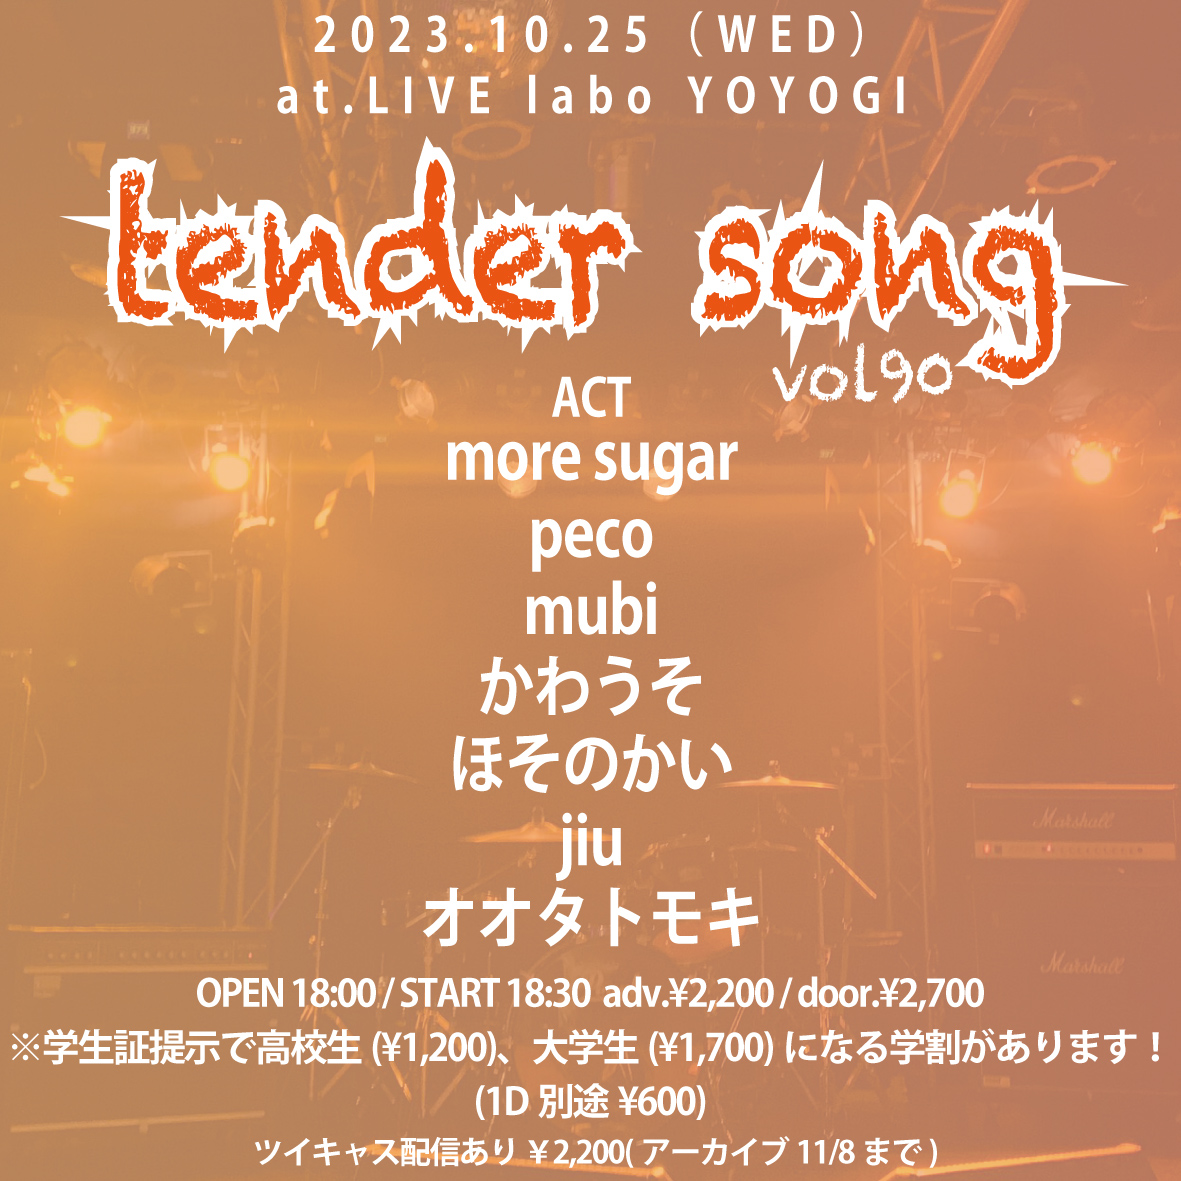 tender song vol.90